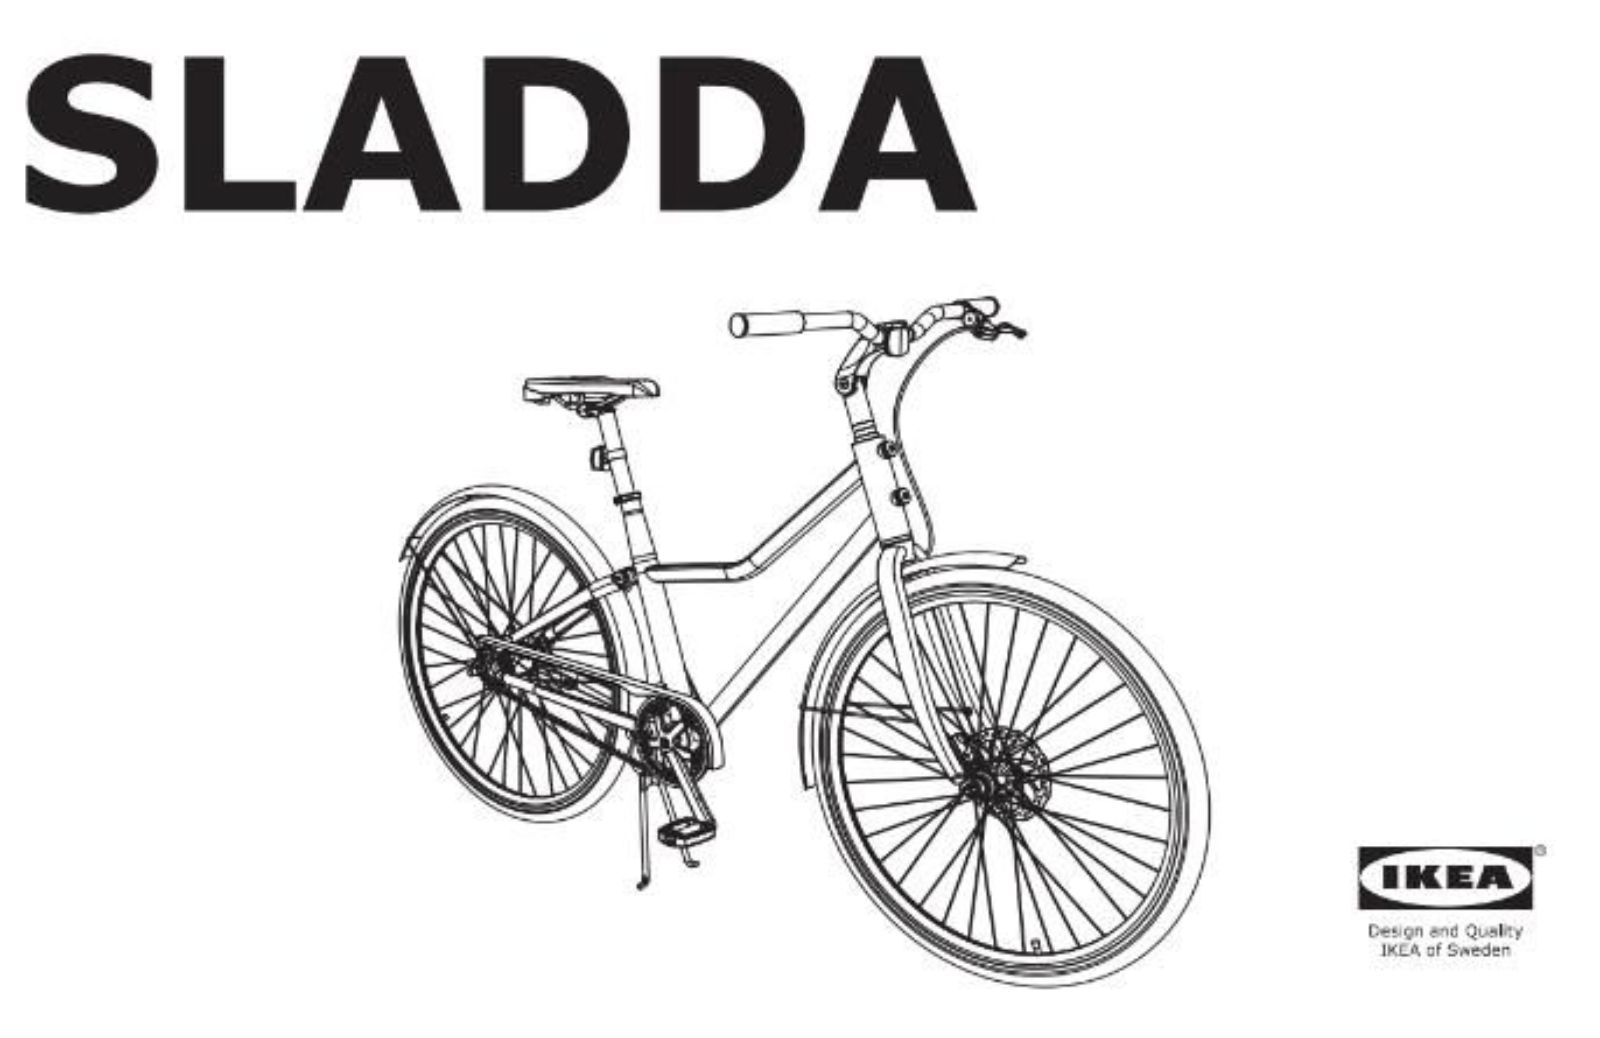 Mobilità sostenibile: arriva Sladda, la nuova bici di Ikea